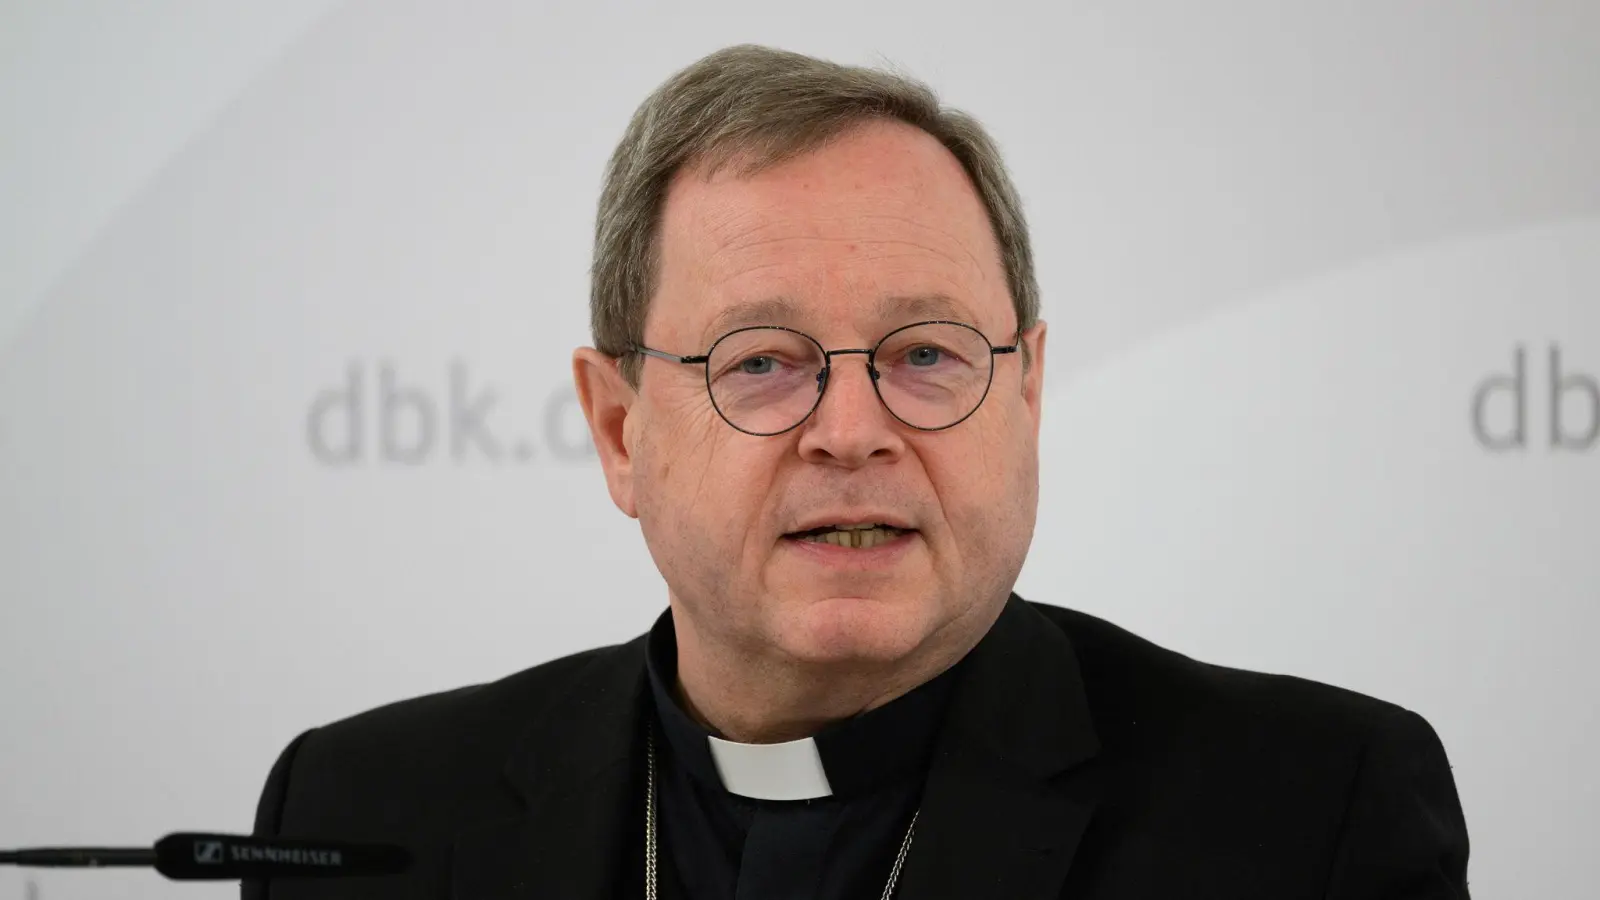 Bischof von Limburg und Vorsitzender der Deutschen Bischofskonferenz Georg Bätzing. (Foto: Robert Michael/dpa)